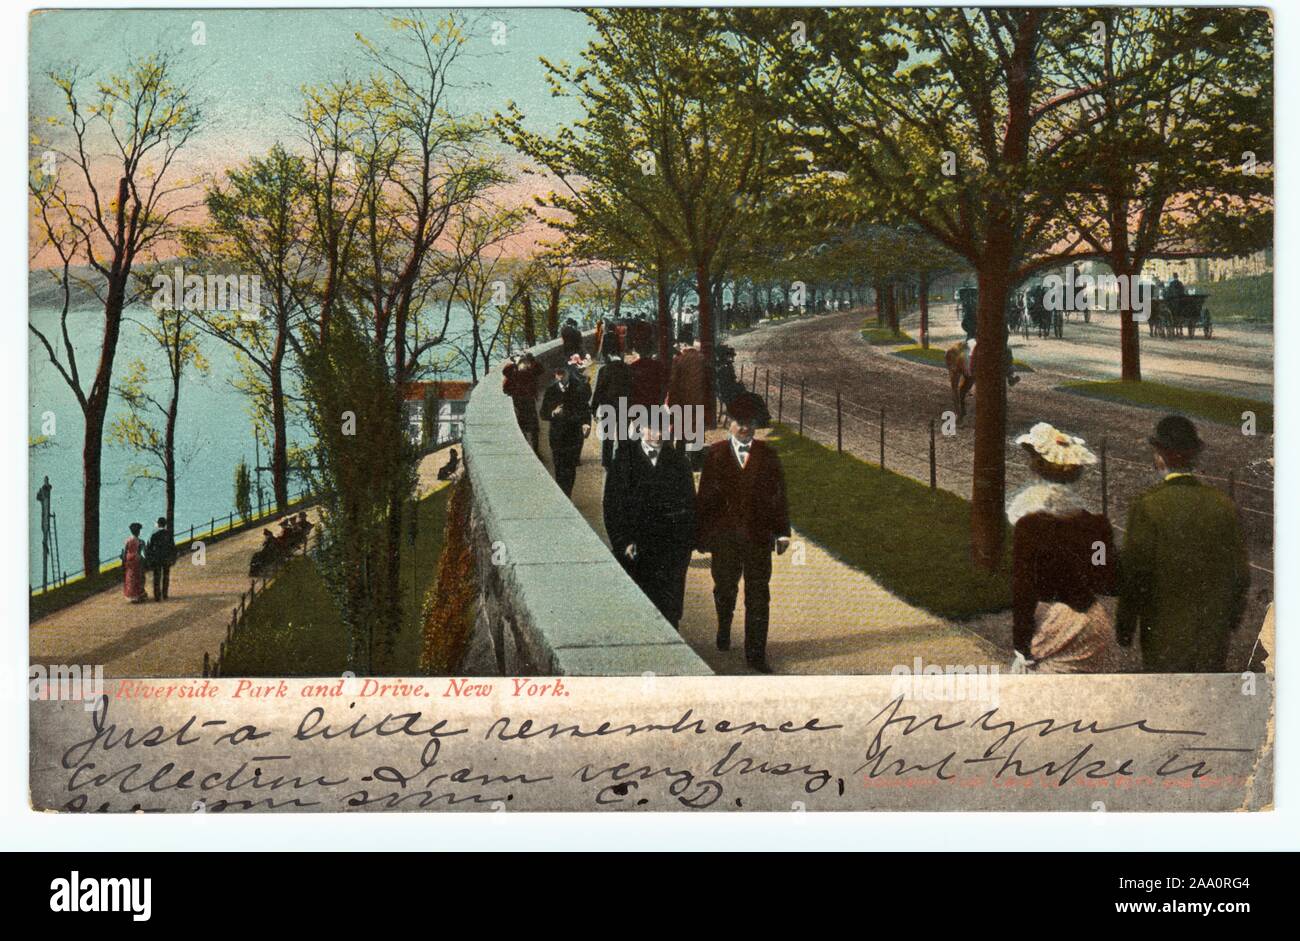 Tarjeta postal ilustrada de la gente caminando, Riverside Park y unidad, la ciudad de Nueva York, publicado por Souvenir Tarjeta Post Co, 1905. Nueva York y Berlín. Desde la Biblioteca Pública de Nueva York. () Foto de stock